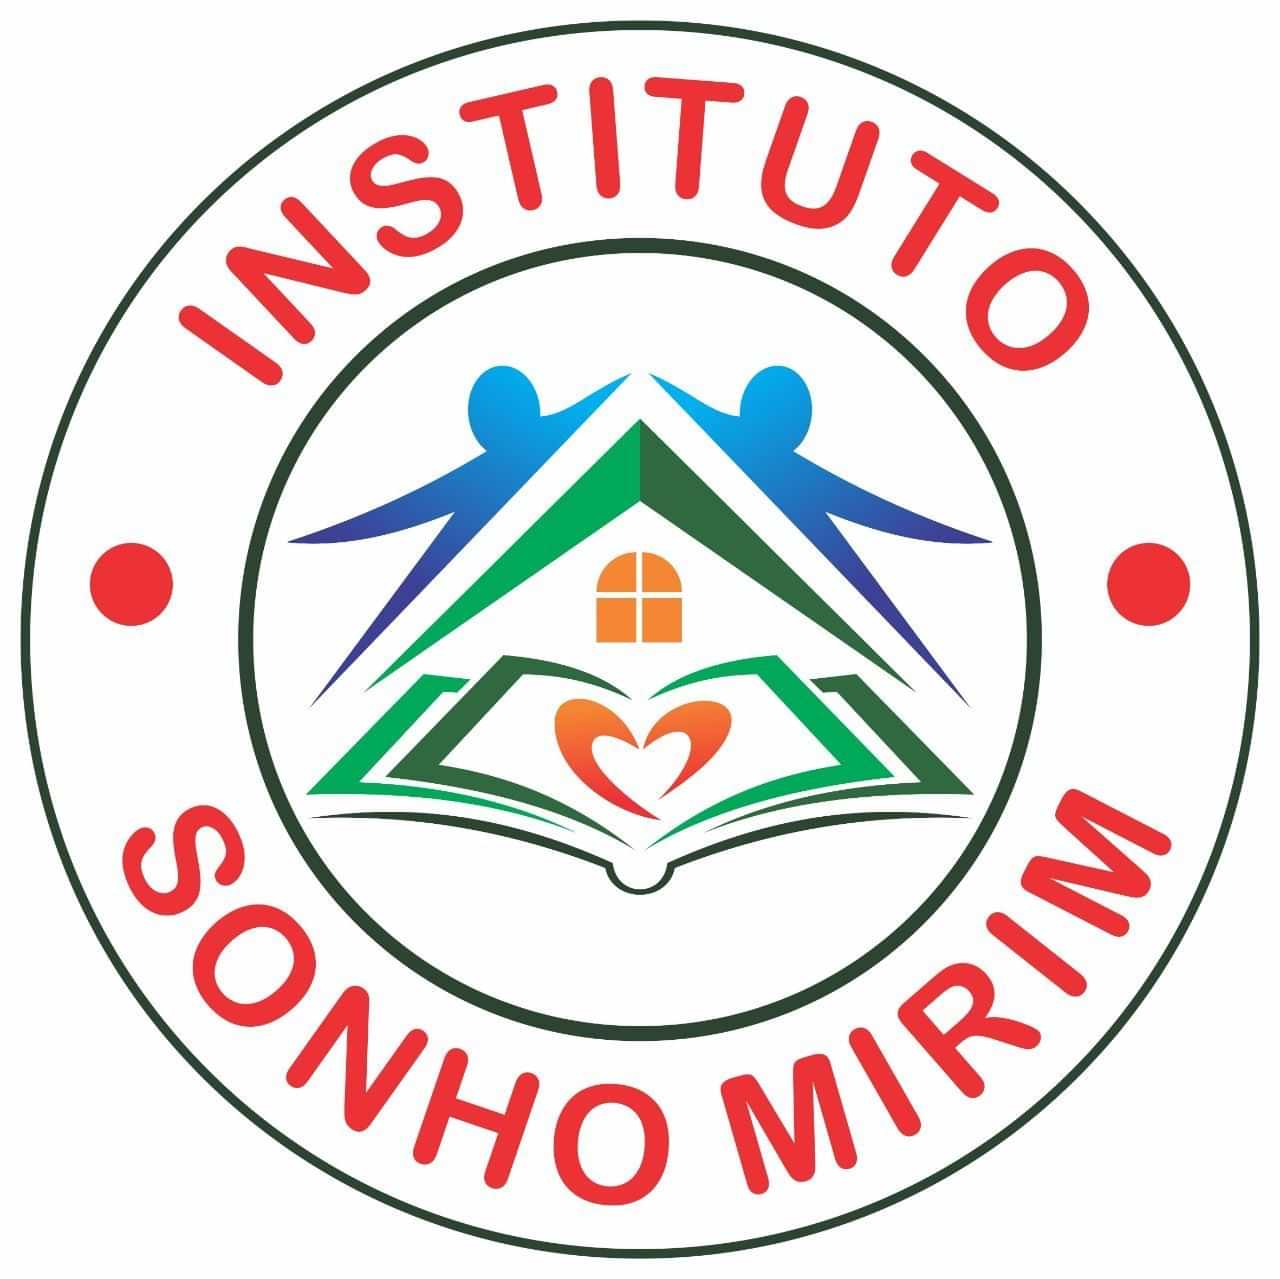  Instituto Sonho Mirim 